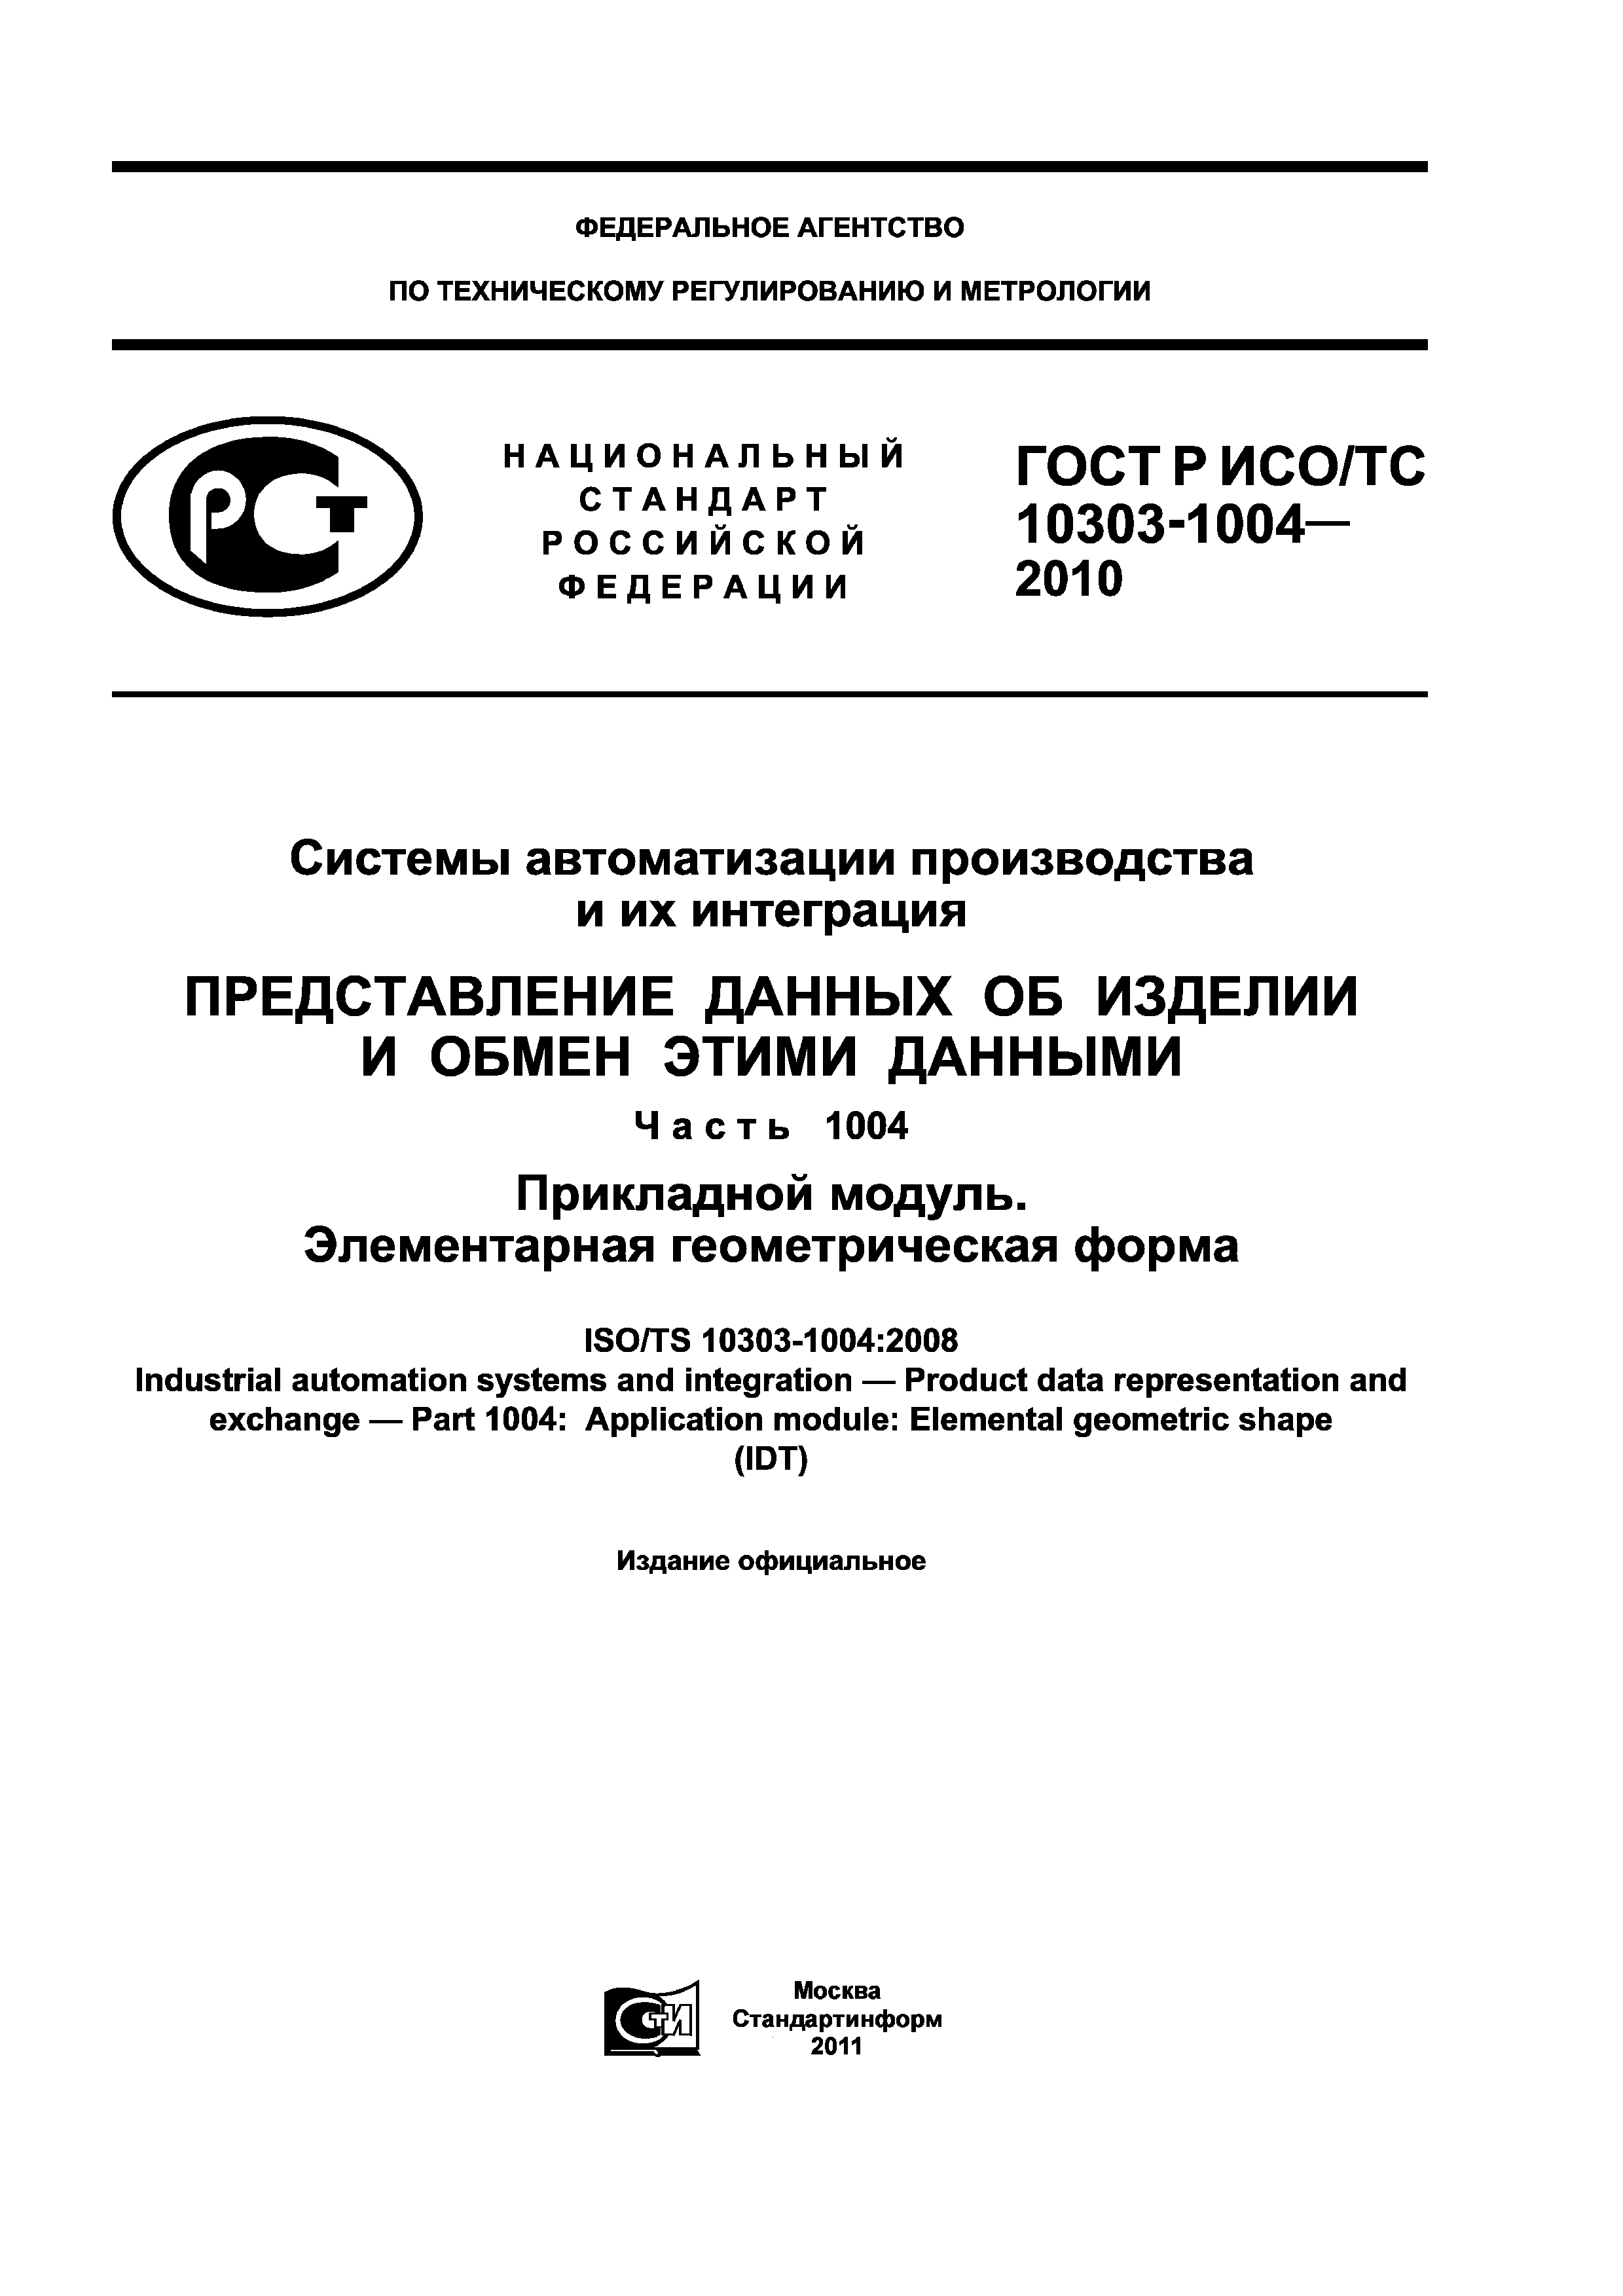 ГОСТ Р ИСО/ТС 10303-1004-2010